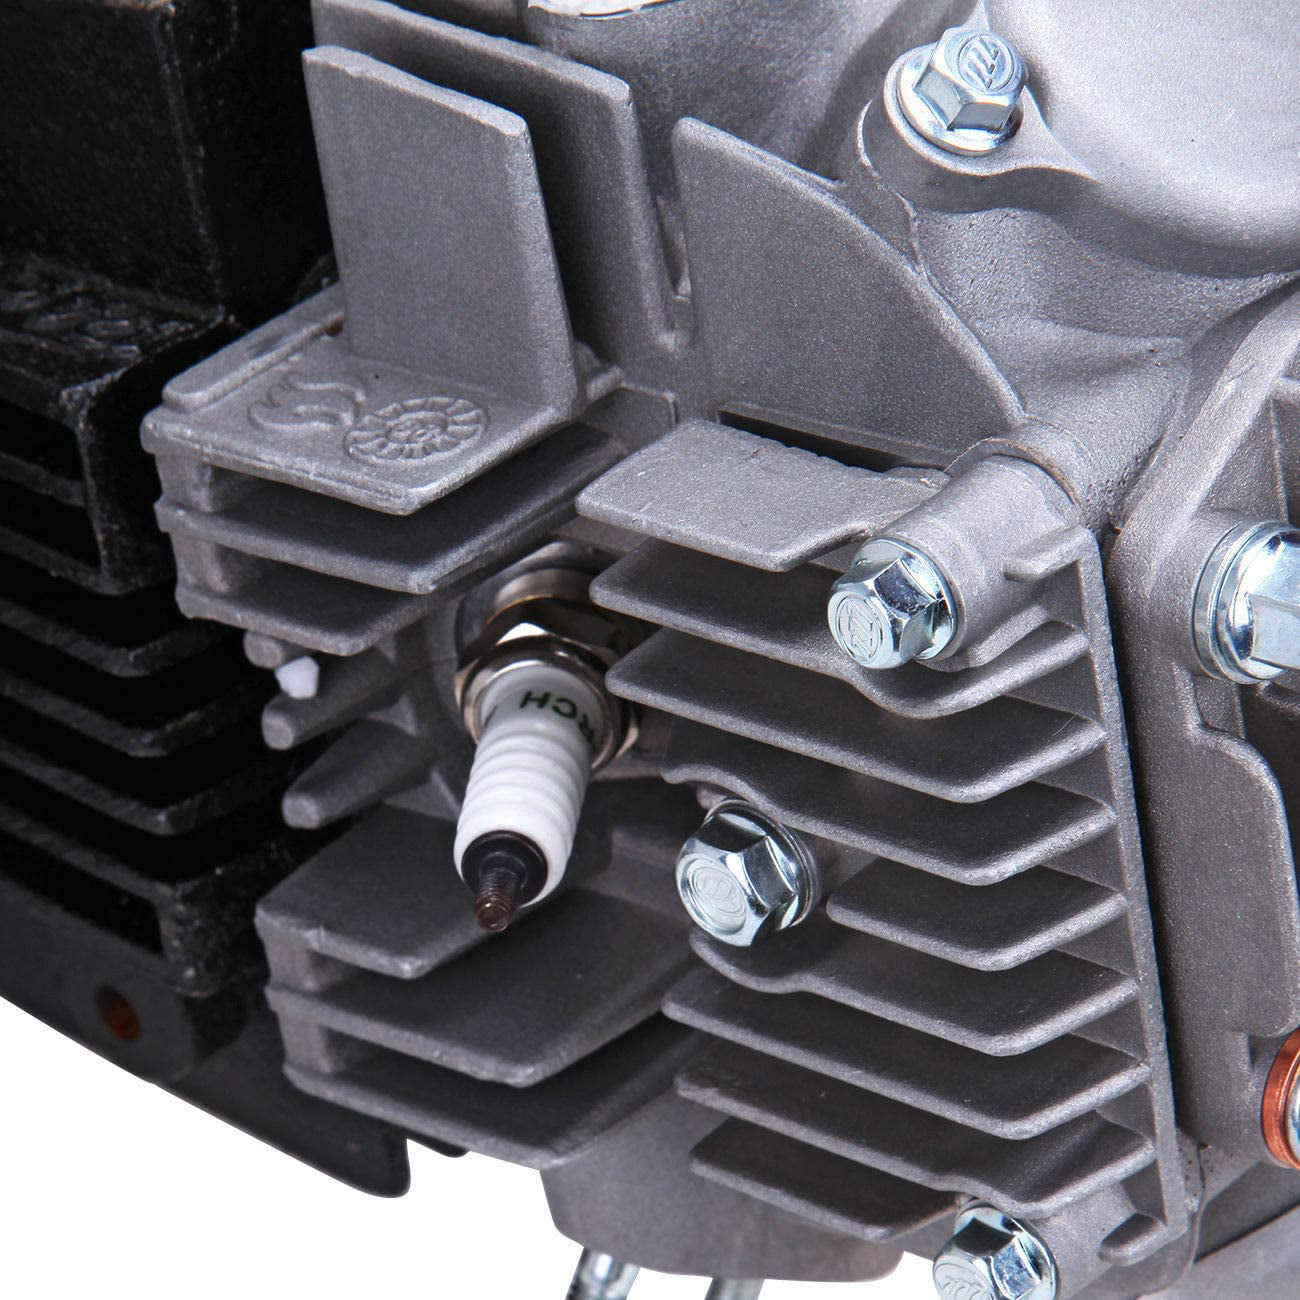 TFCFL 125CC 4-Stroke Engine Motor Manual Clutch with Wiring Single Cylinder Pit Dirt Bike ATV Quad CDI Motor Engine for Honda CRF50F 00-09 11-15 CRF50 Z50/XR50 /XR70 1P52FMI Engine 